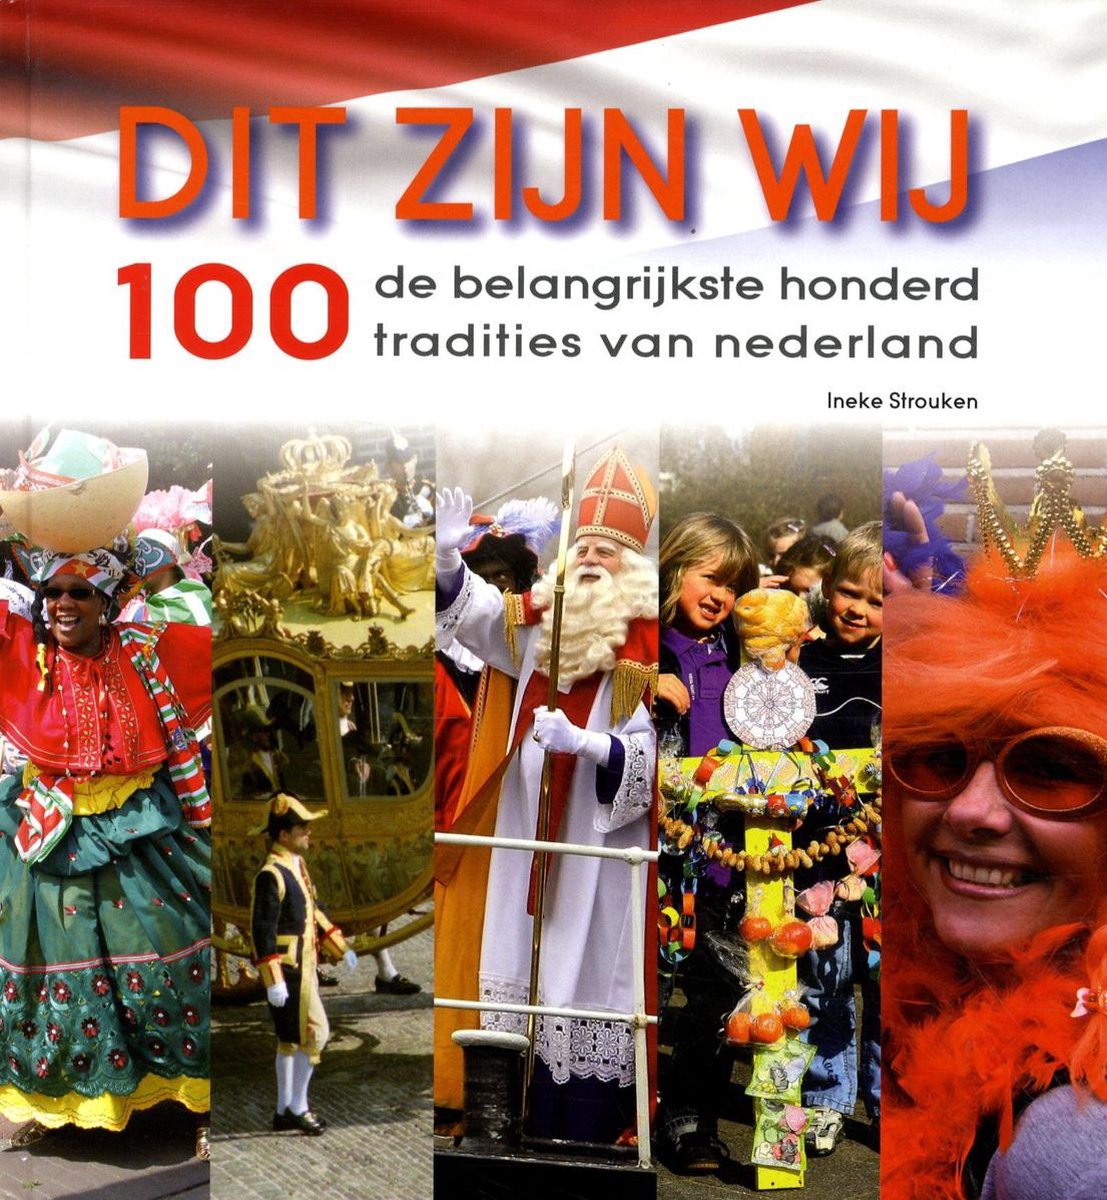 Dit zijn wij - de belangrijkste 100 tradities van Nederland